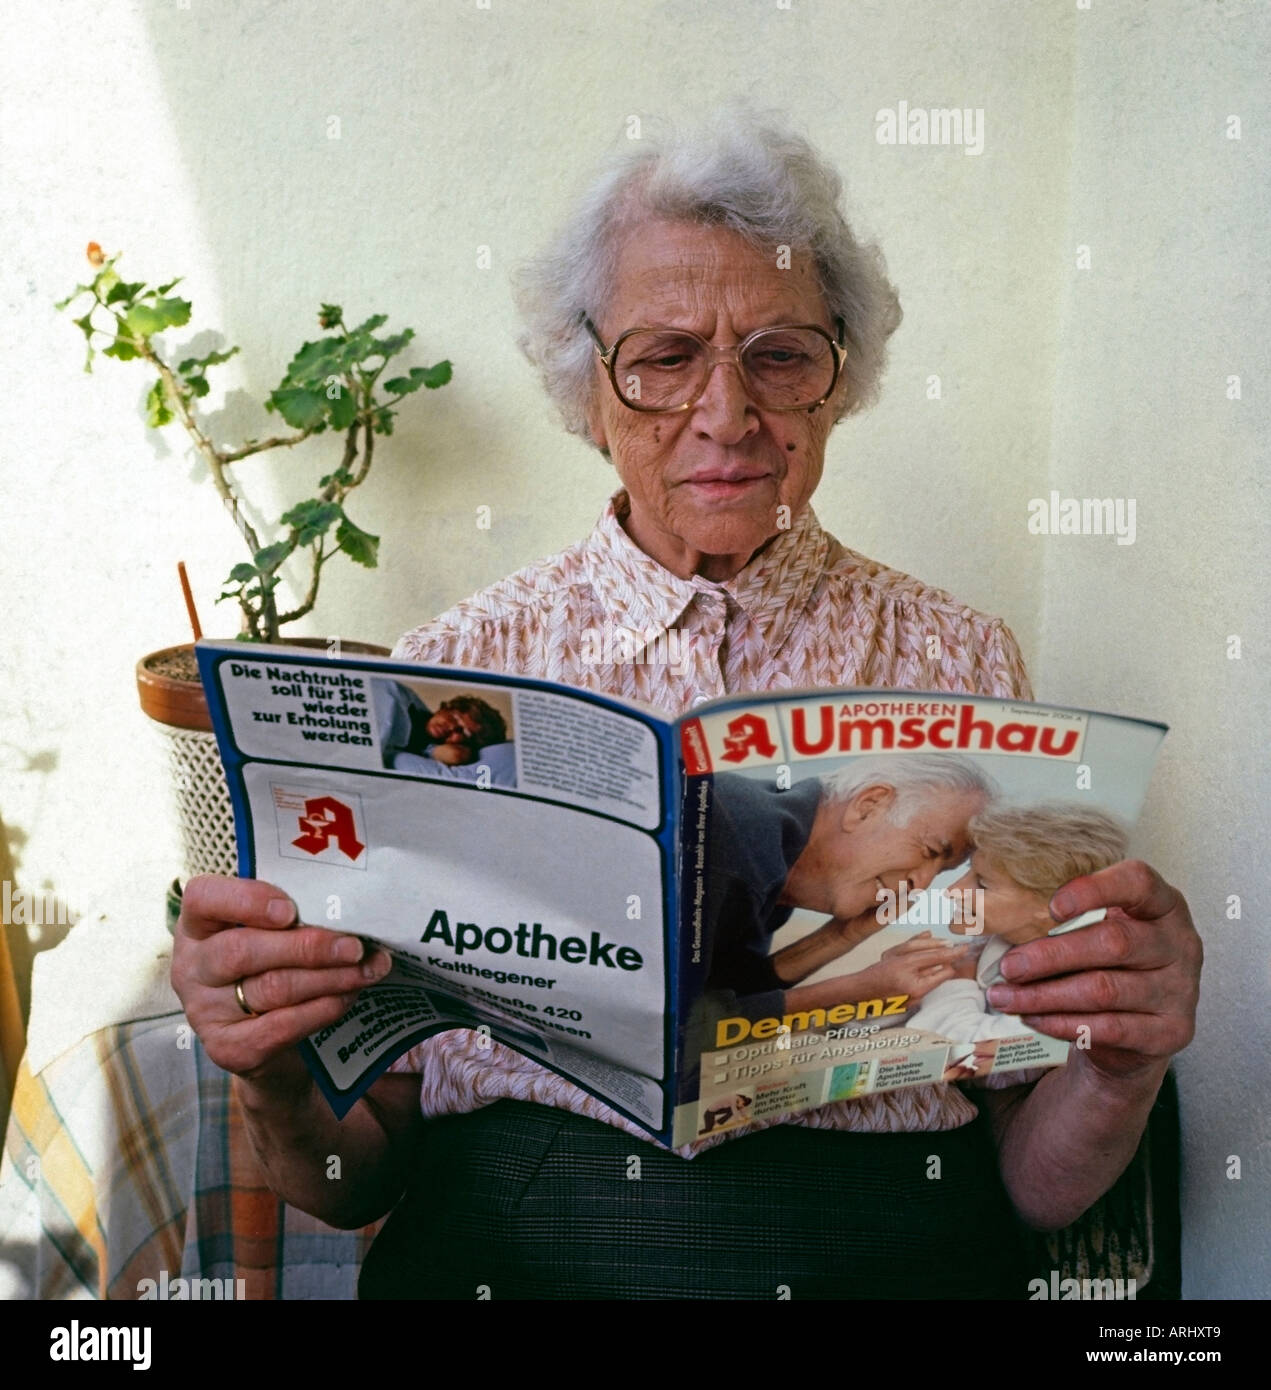 Vieille Femme assise sur le balcon de la lecture d'un magazine de la pharmacie avec un rapport article sur la démence Banque D'Images